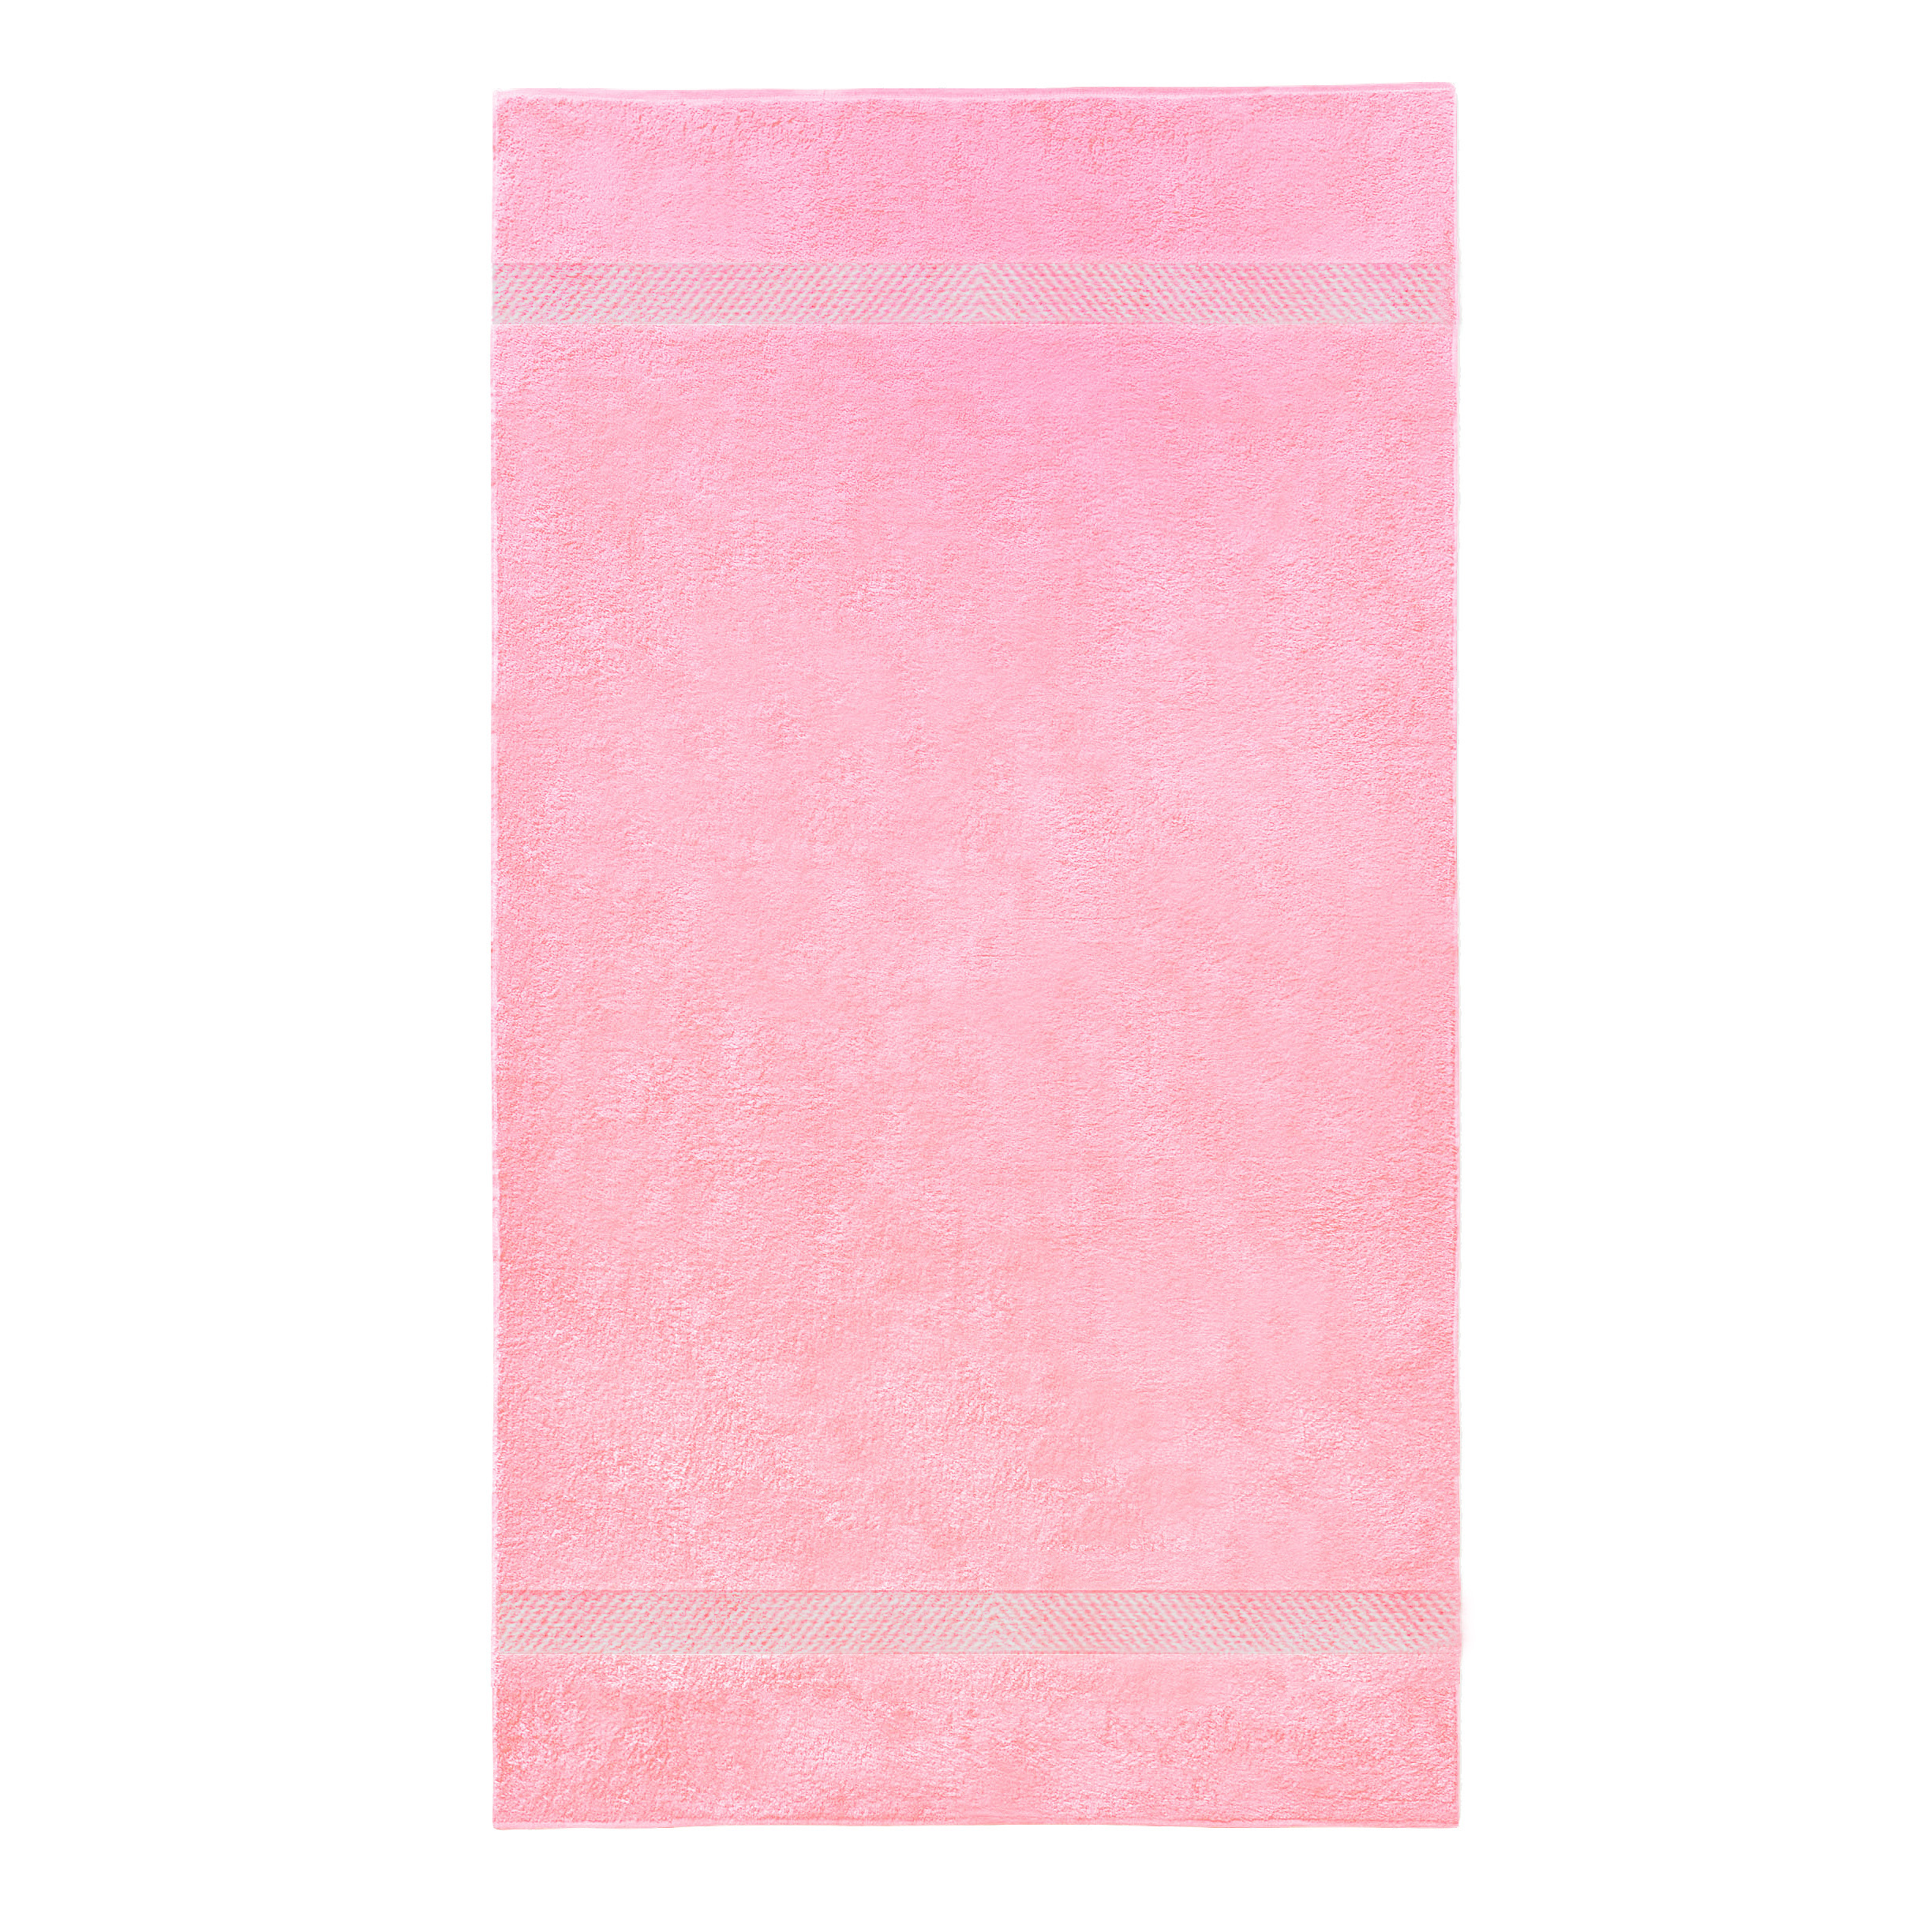 handdoek roze met naam